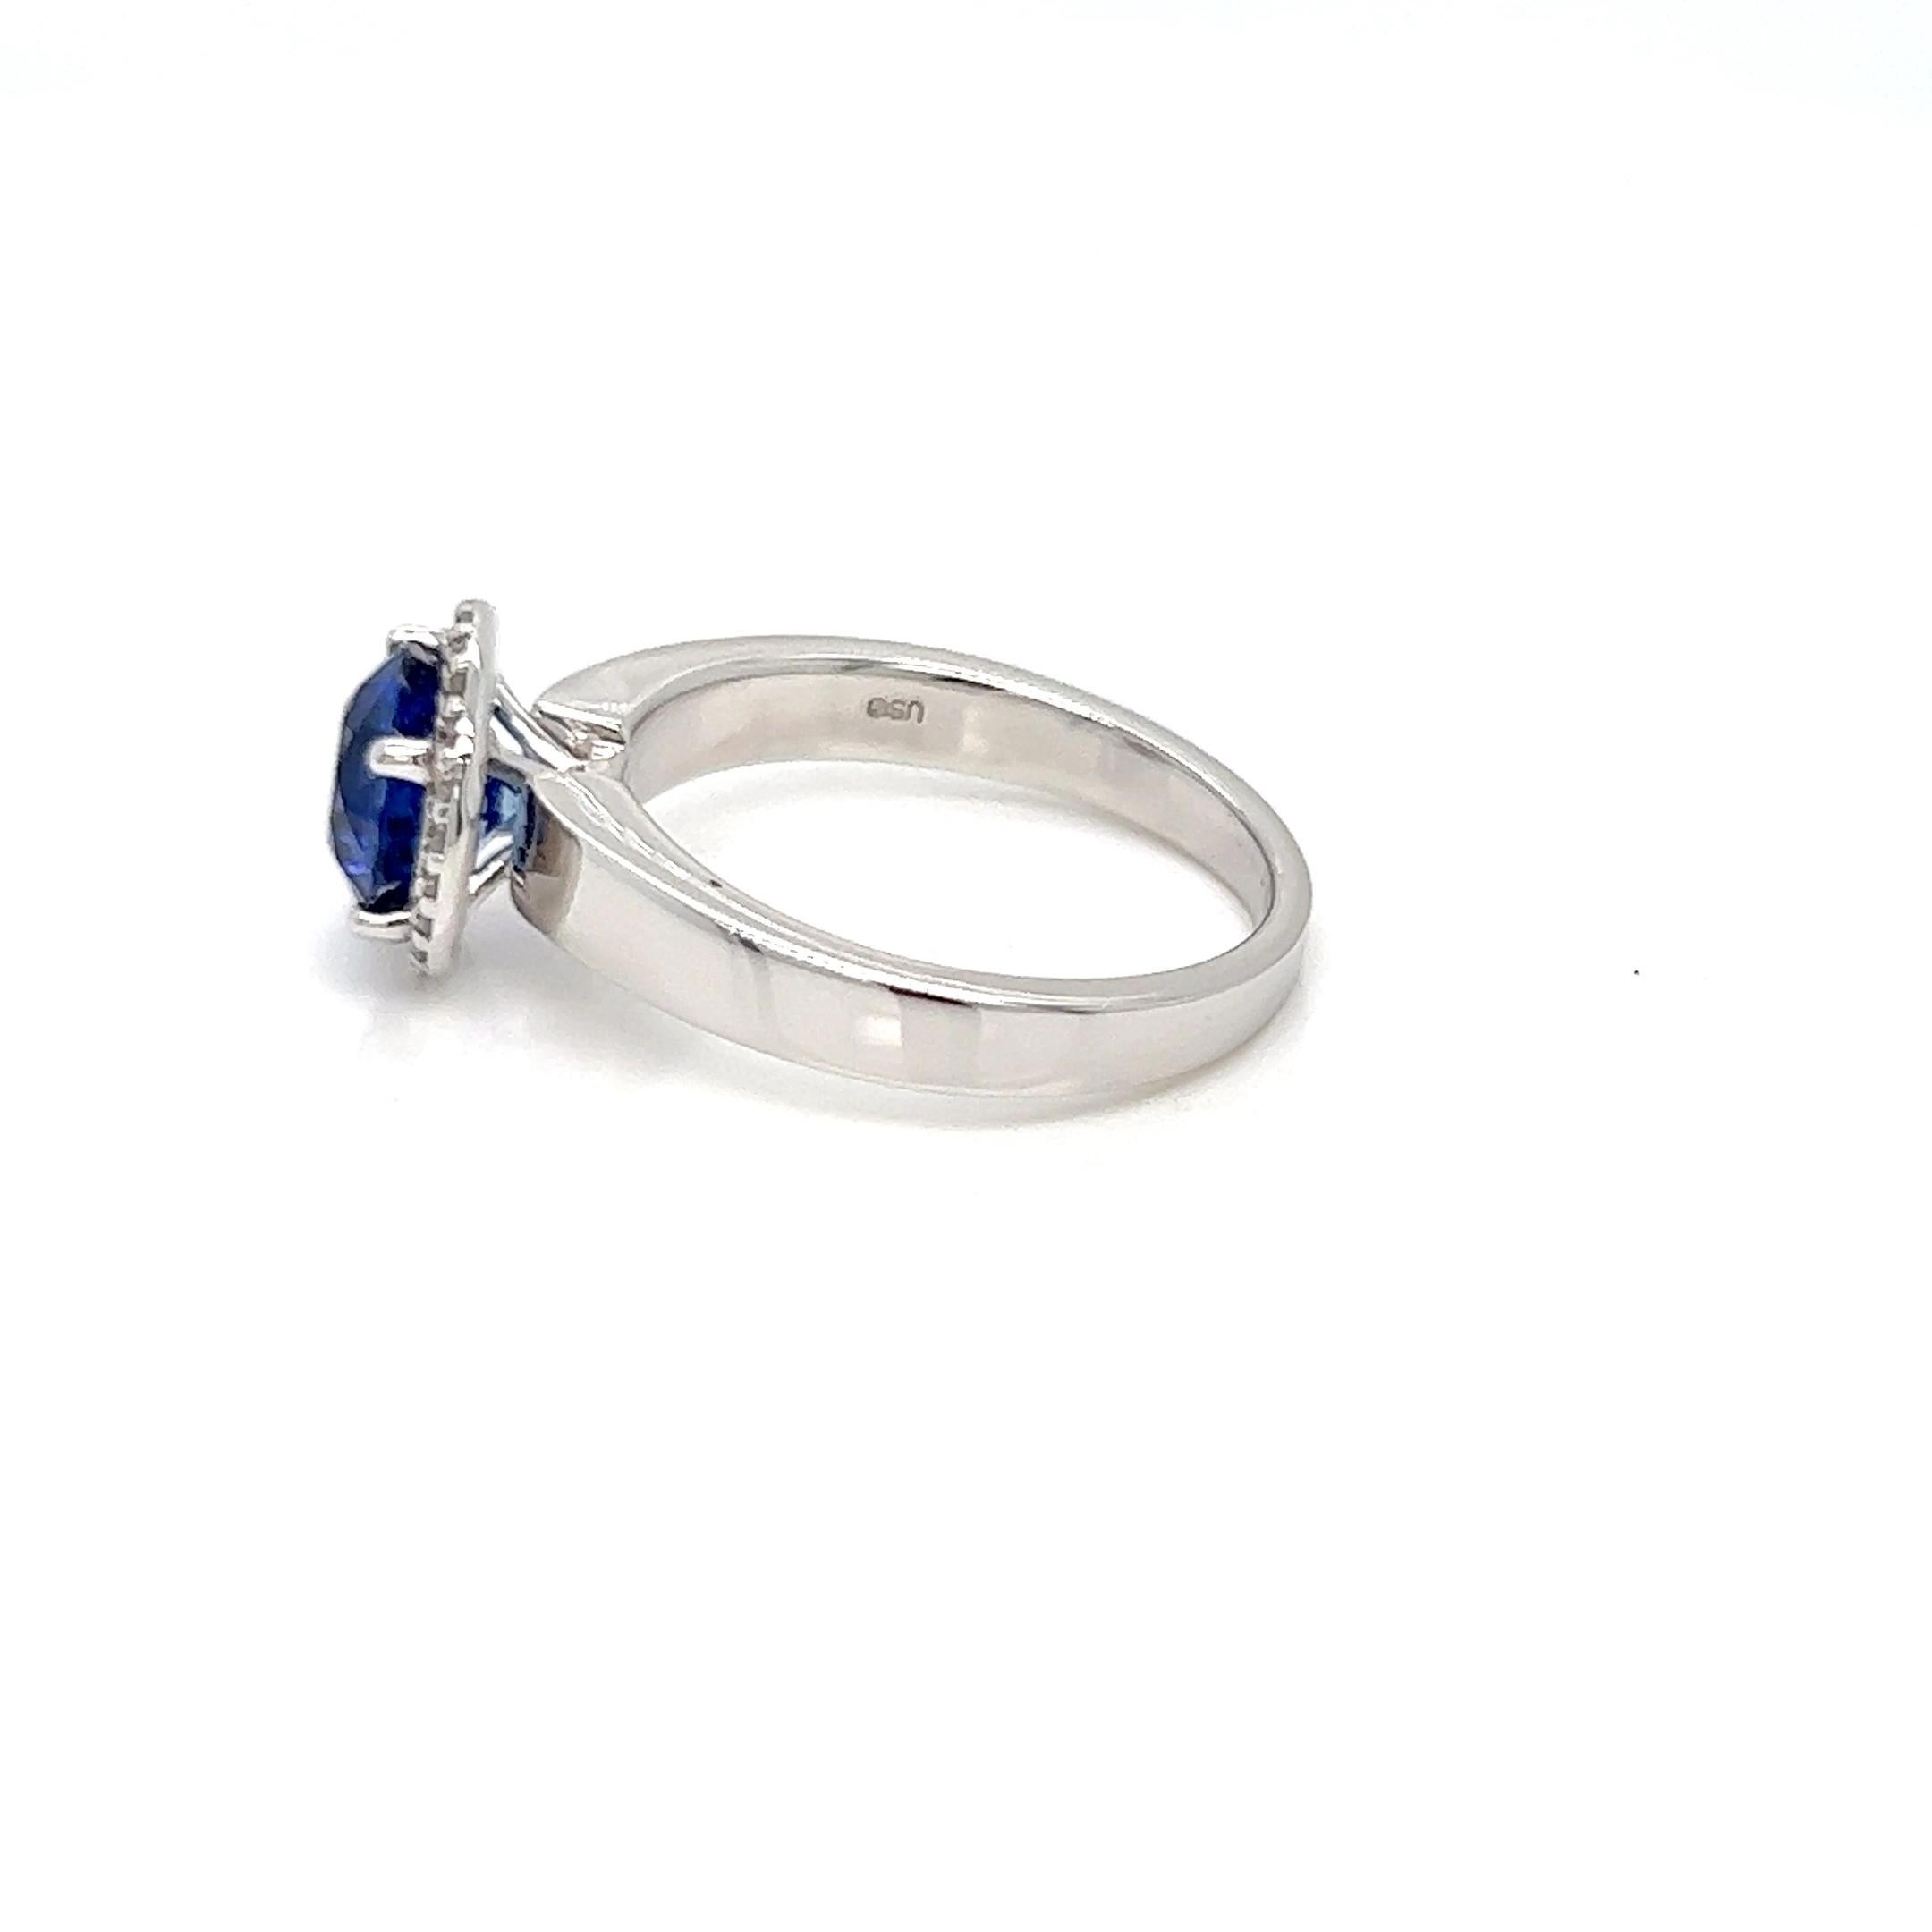 Dieser spektakuläre Saphir-Solitär-Halo-Ring mit Diamanten besteht aus einem 1,91 Karat schweren Saphir aus Sri Lanka, der für seinen leuchtend blauen Farbton bekannt ist, umgeben von natürlichen Diamanten von 0,11 Karat. Die perfekte Harmonie von